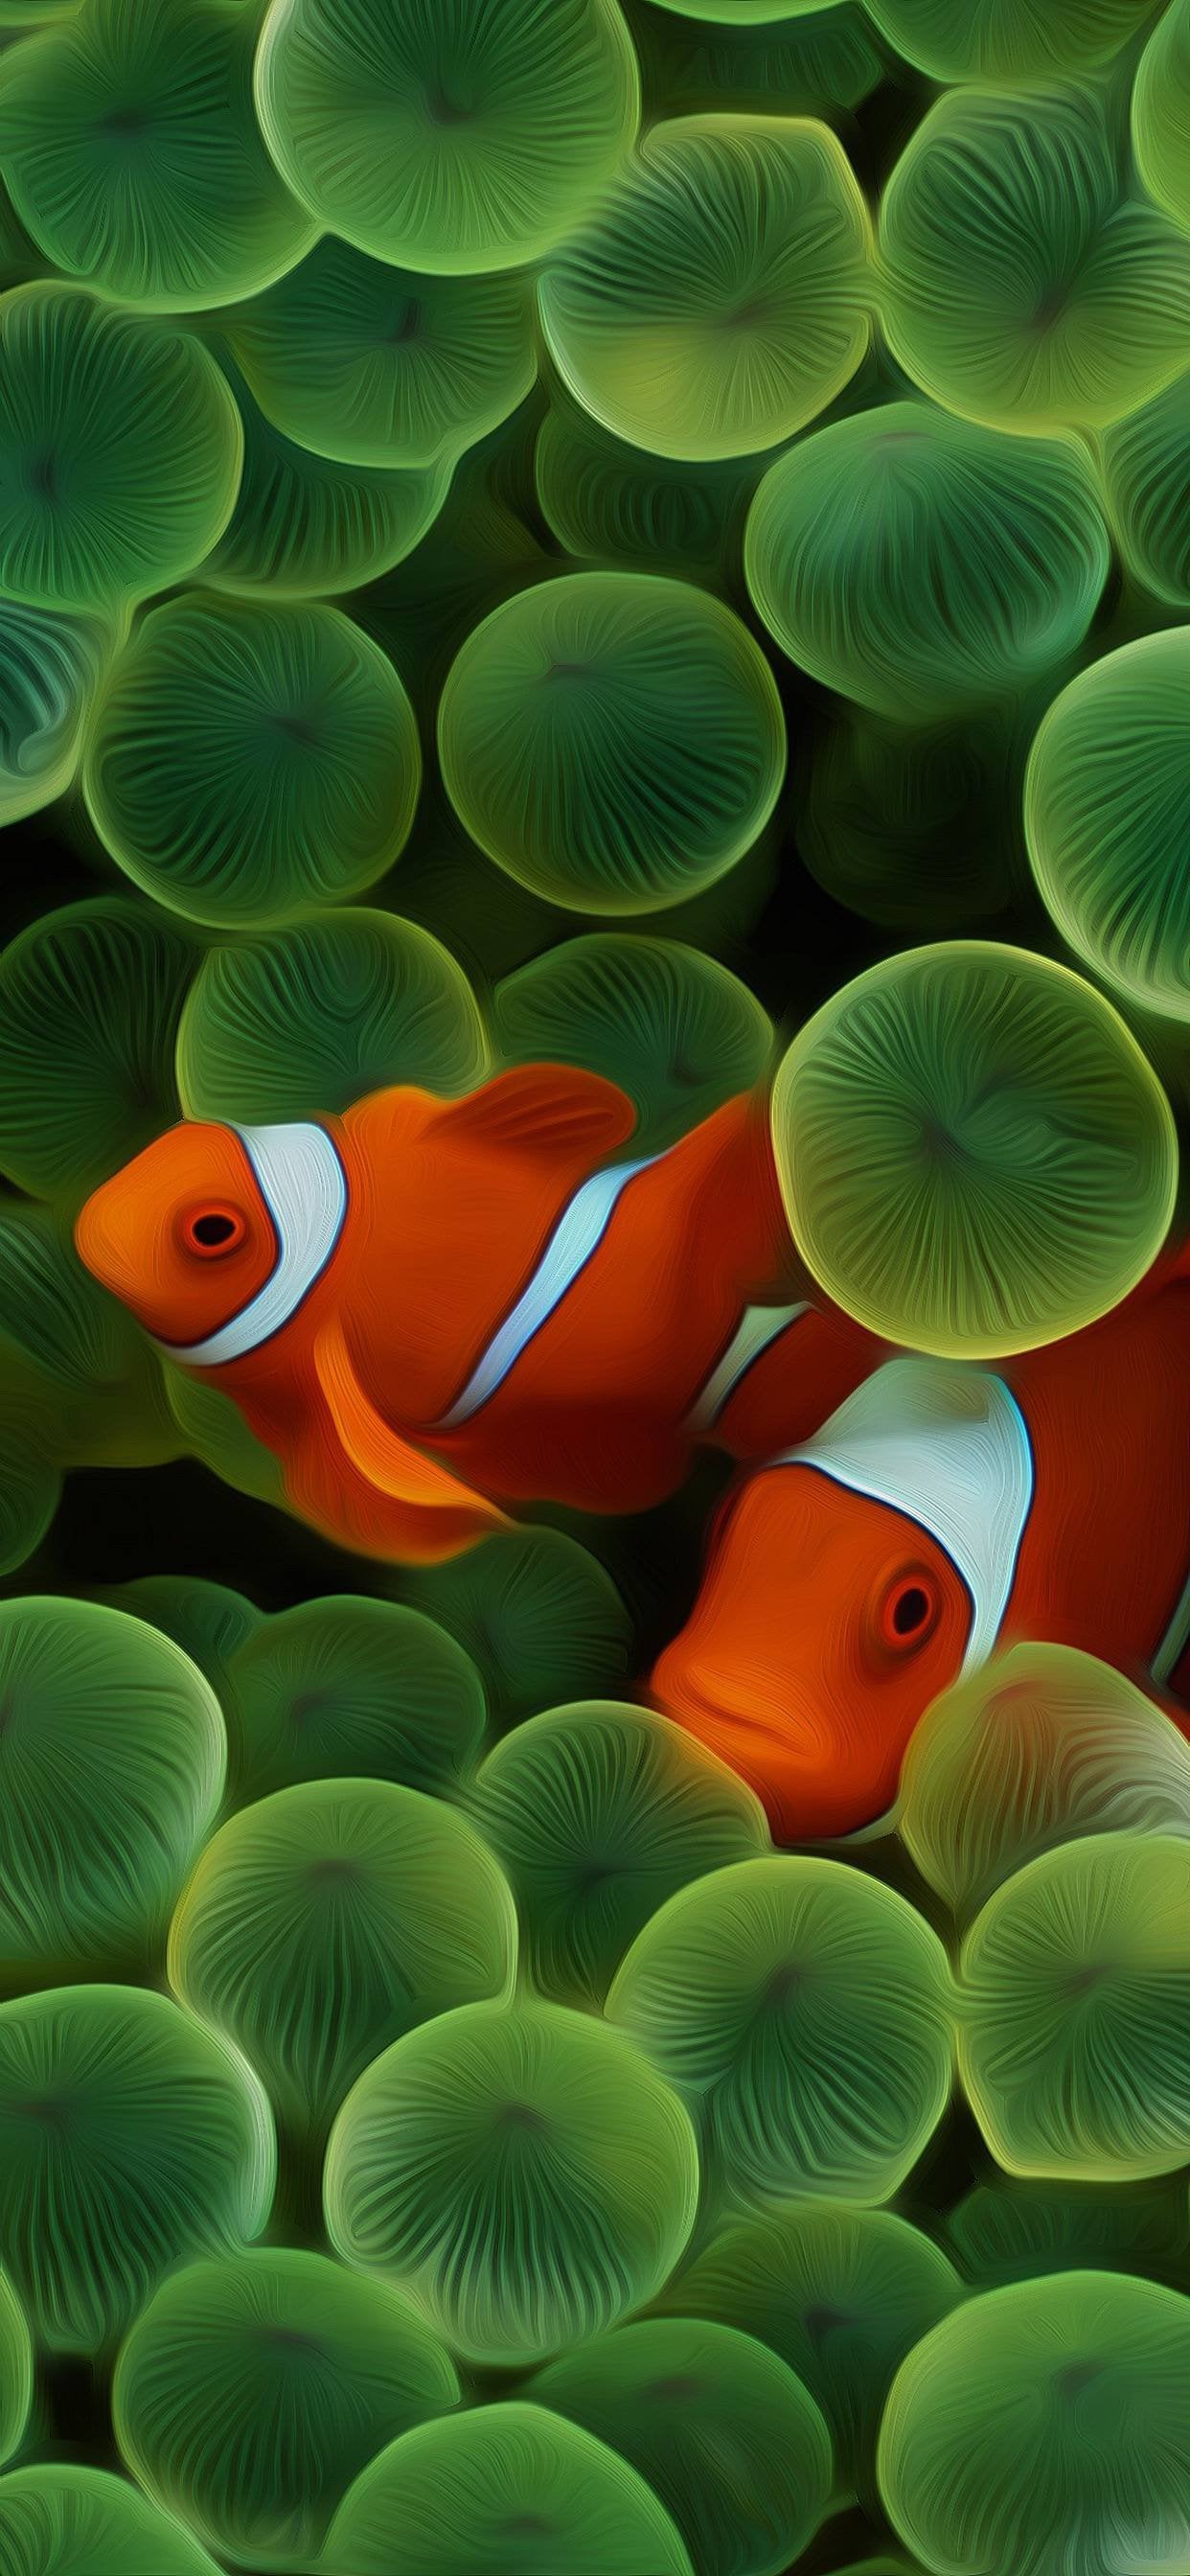 Nemo clown fish swimming in the green anemone sea wallpaper - Clown, fish